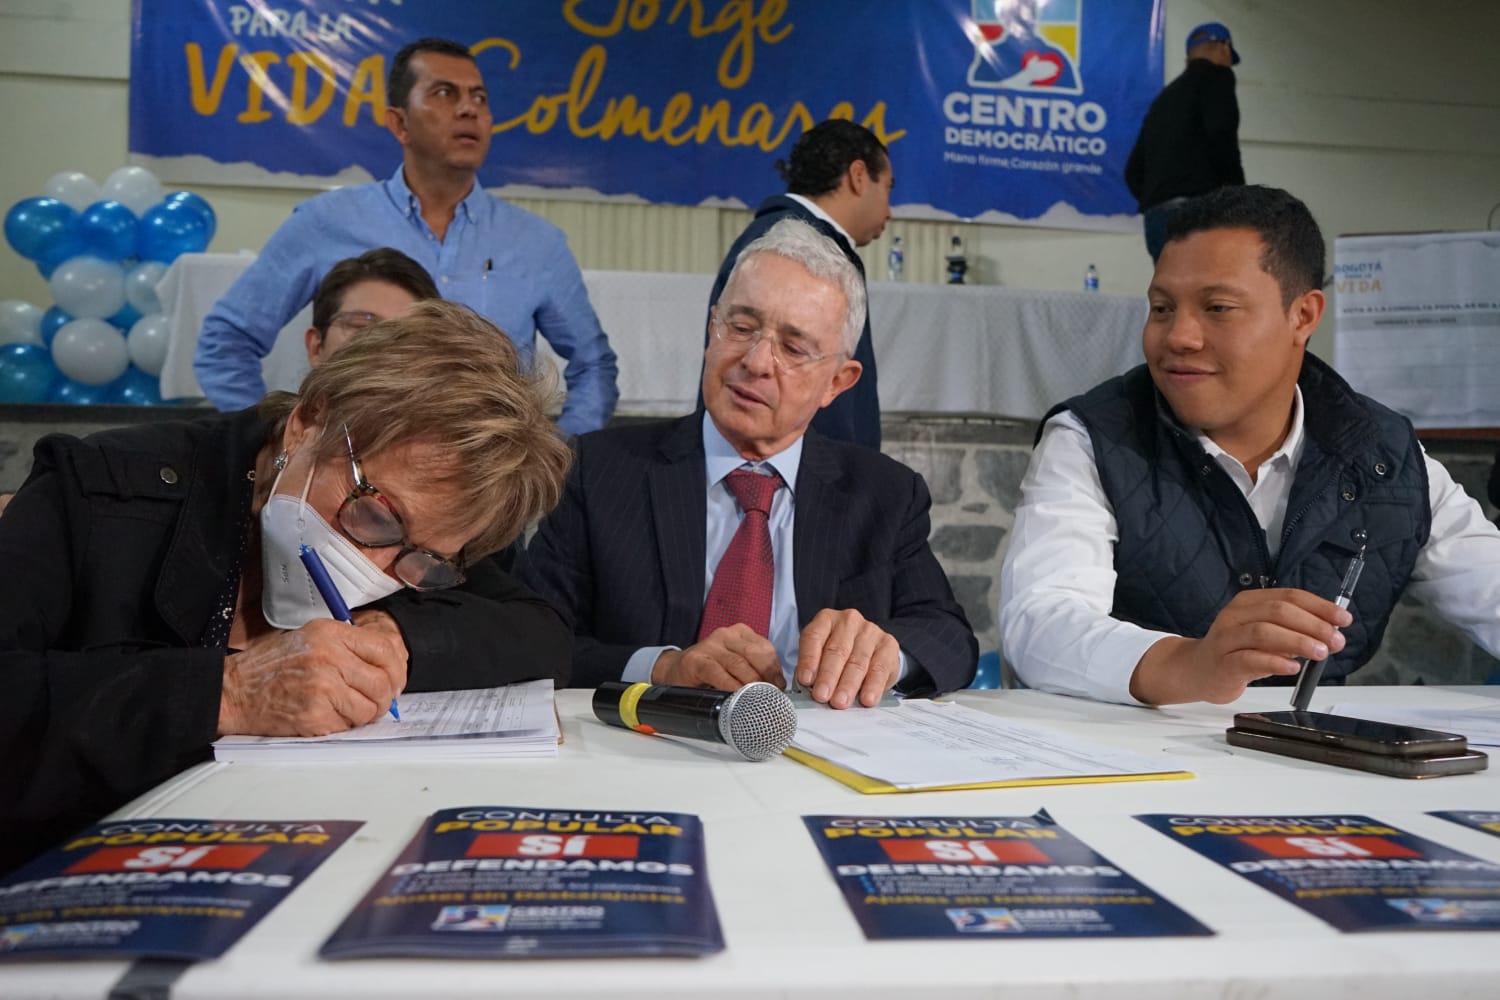 Foto en la que aparecen una ciudadana firmando junto a Alvaro Uribe y el concejal Colmenares